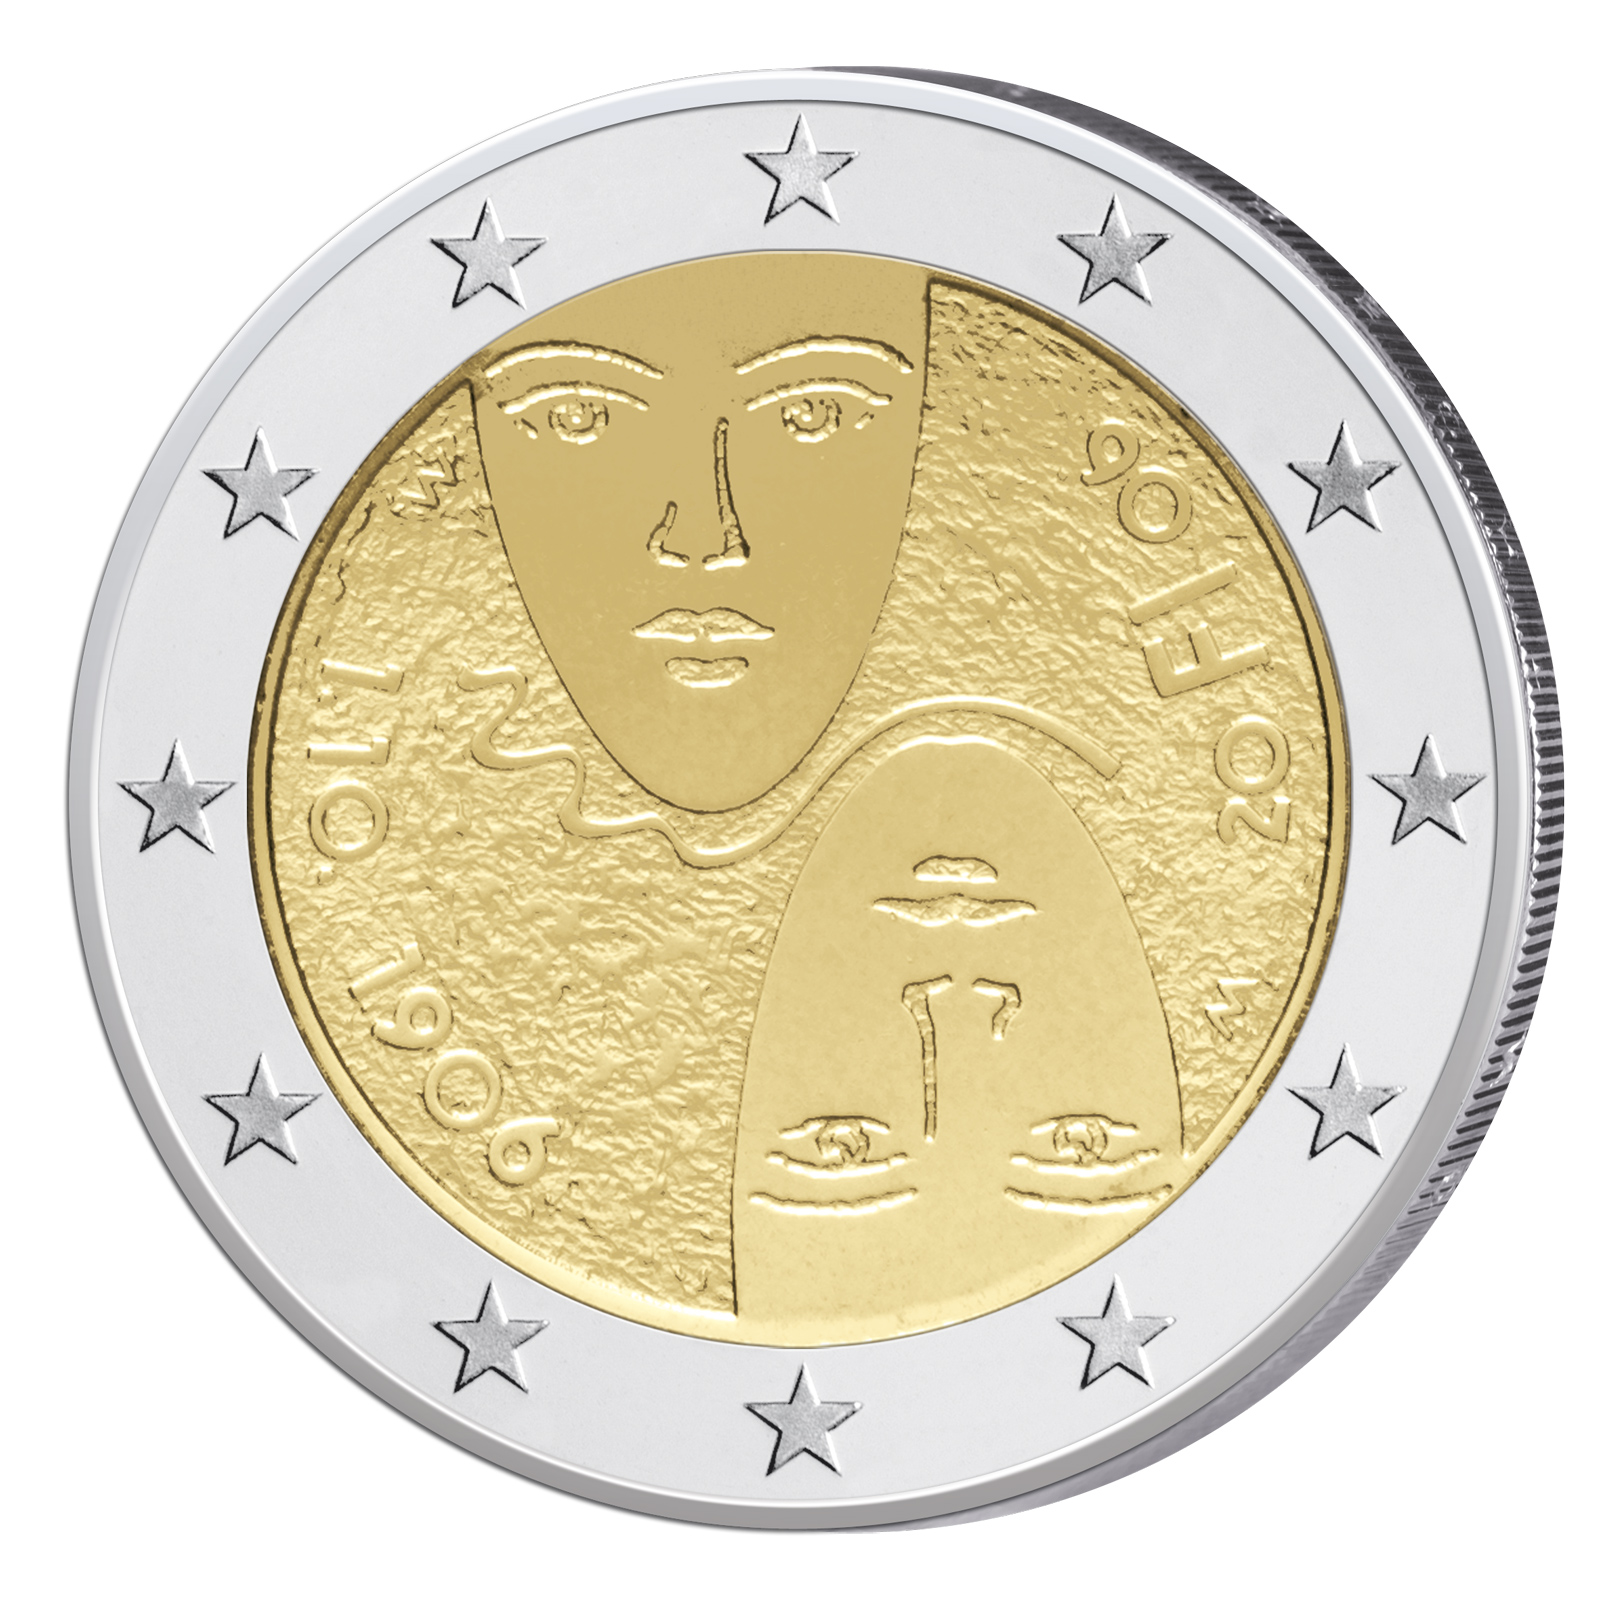 2 Euro Gedenkmunzen 2016 Munzbilder Und Informationen Zu Den Themen Der Neuen 2 Euro Munzen 2016 Primus Munzen Blog